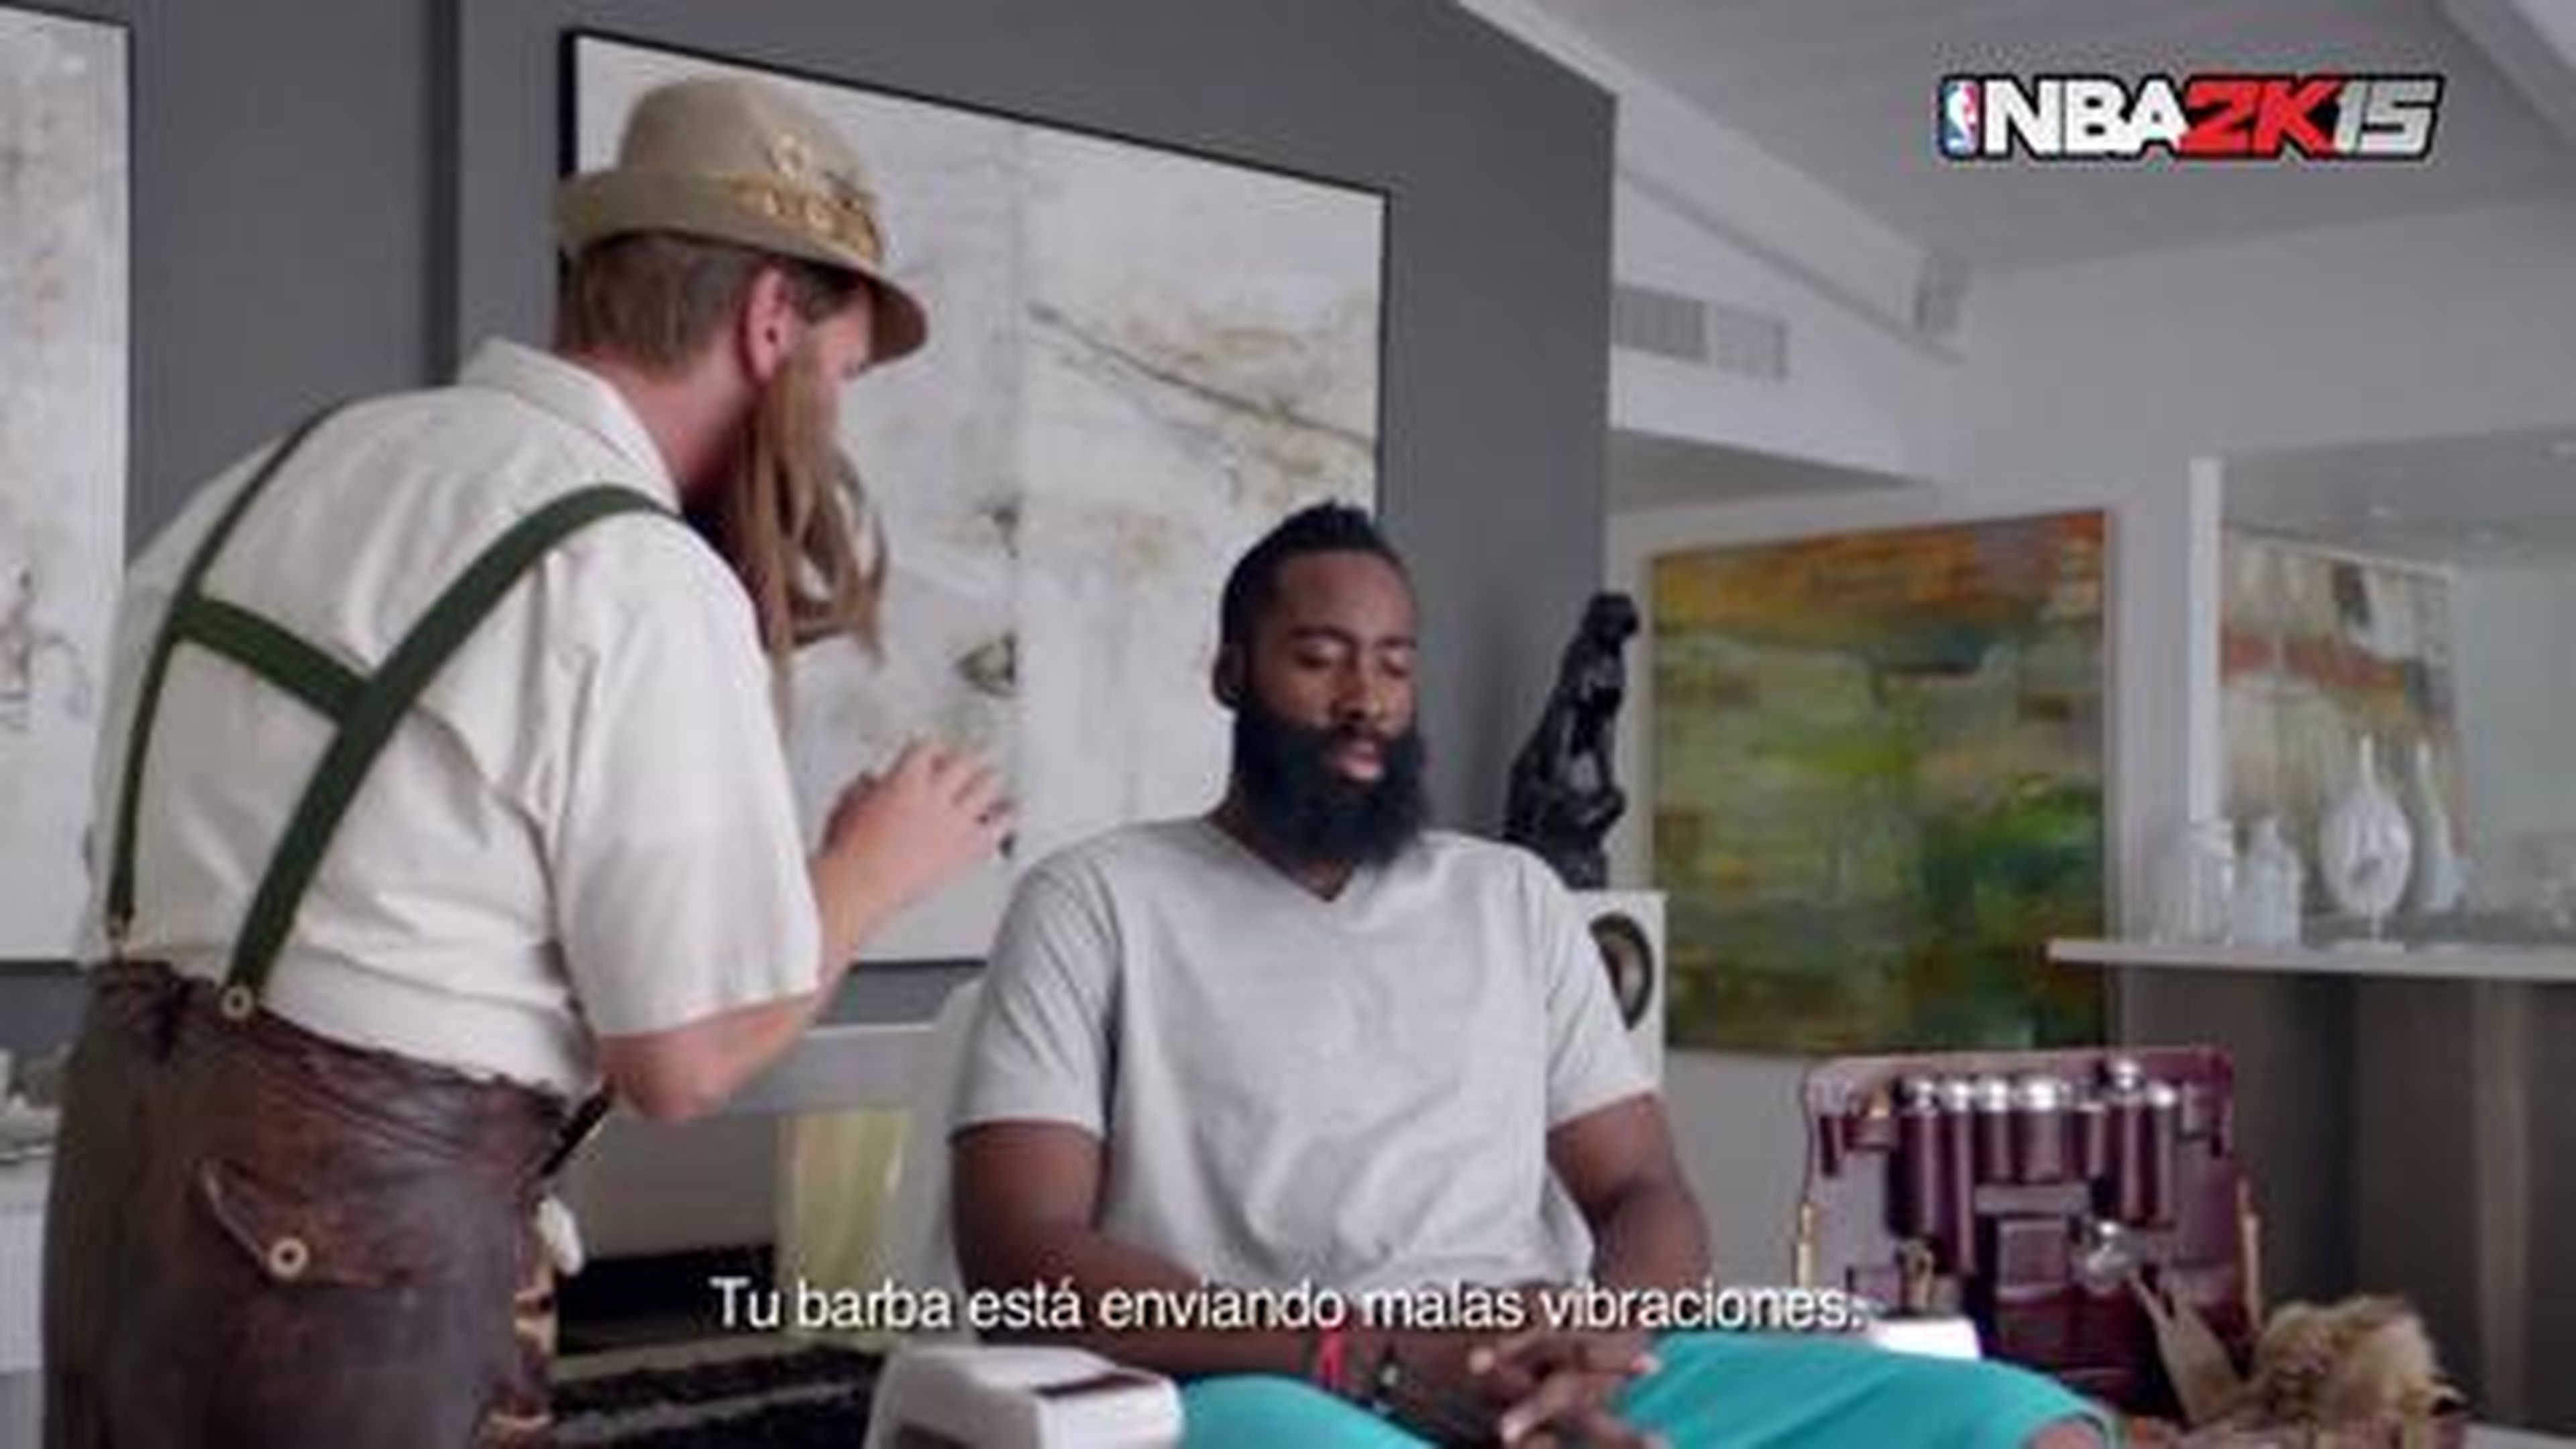 ¡NBA 2K15 presenta “El gurú de la barba”, con James Harden!